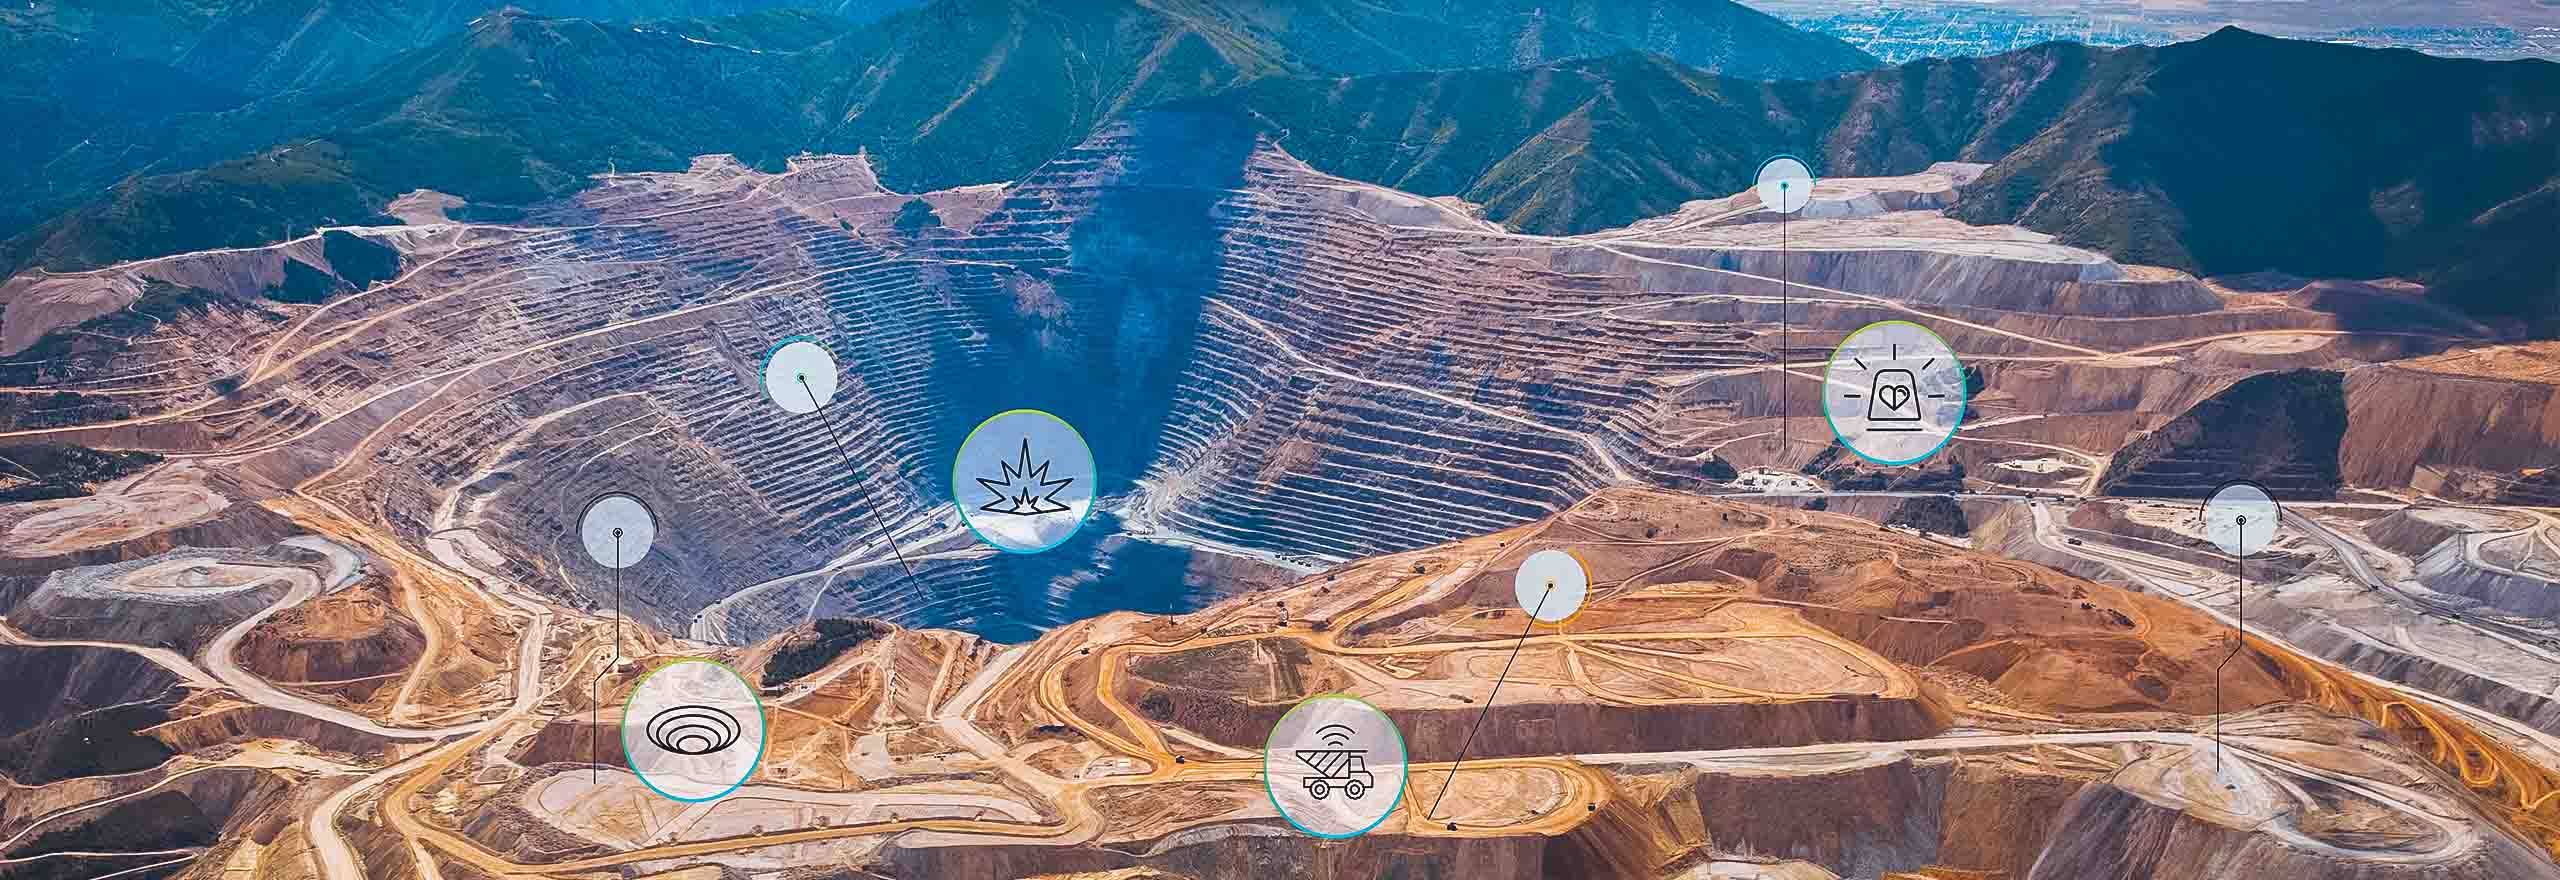 vista aérea de una mina a cielo abierto con recubrimientos técnicos 